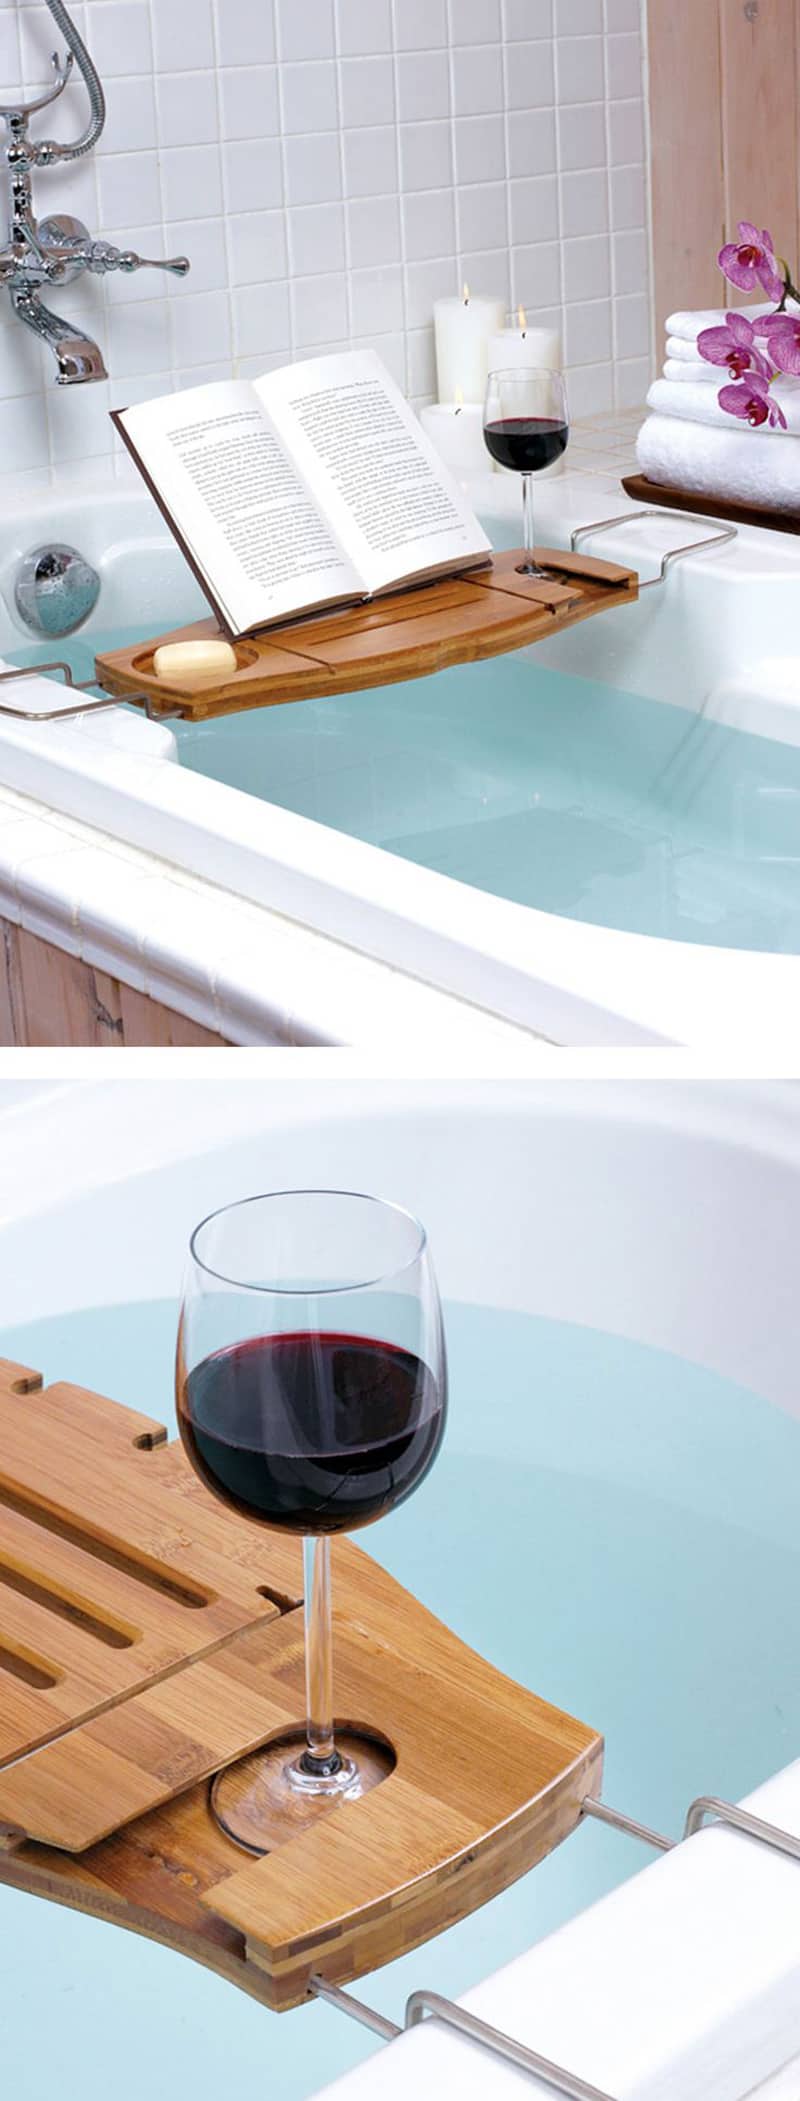 Bath tub caddy-designrulz (1)